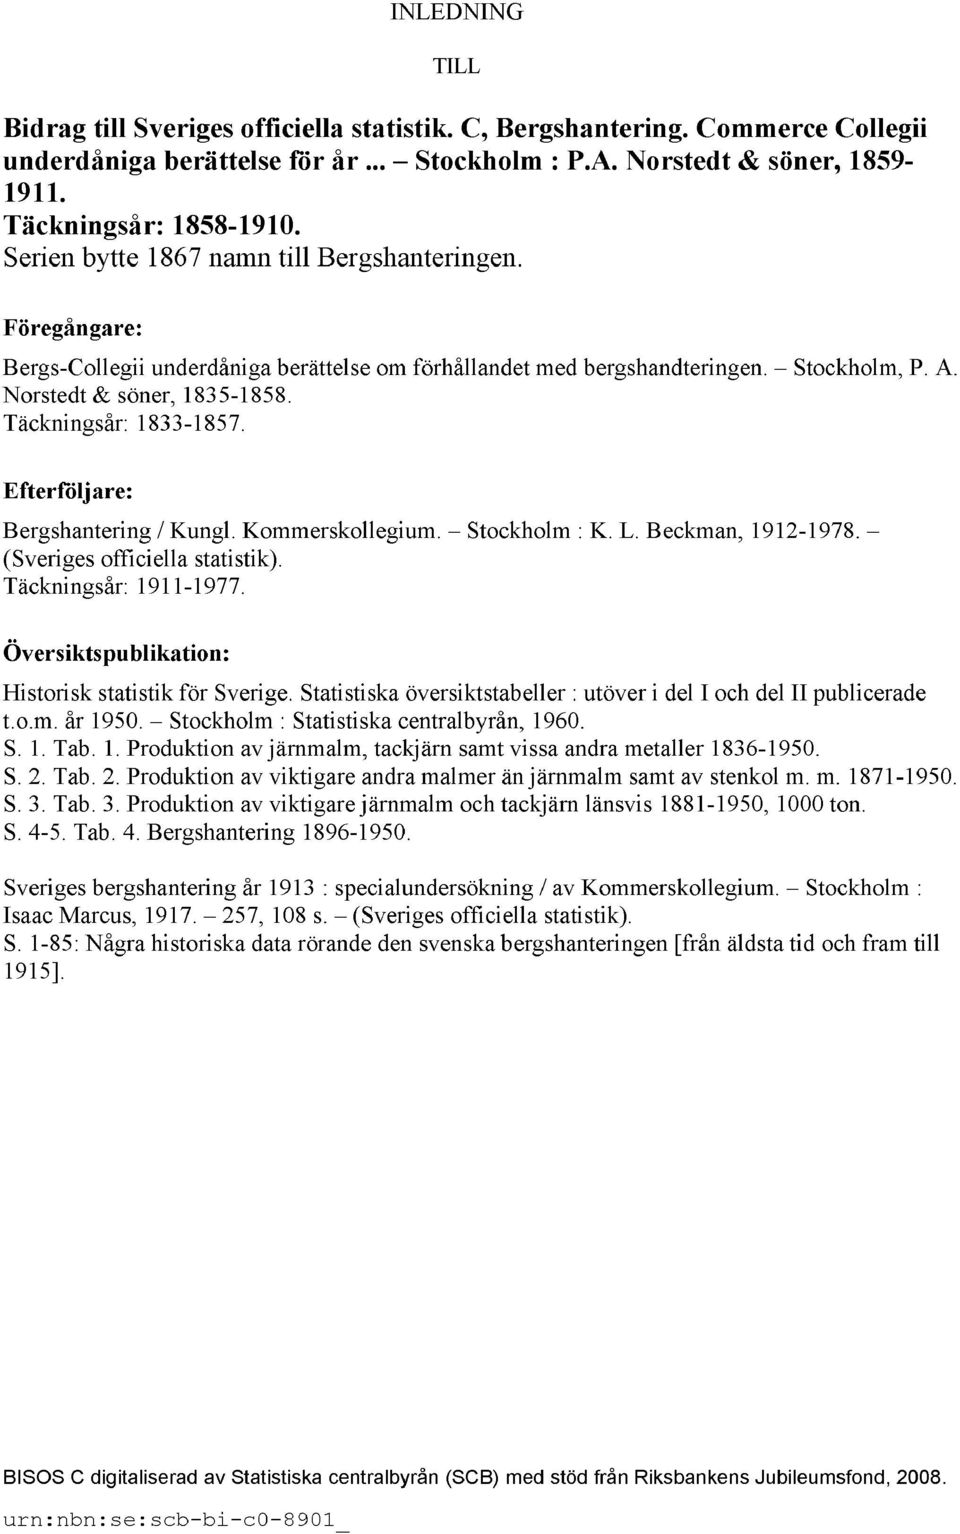 Täckningsår: 1833-1857. Efterföljare: Bergshantering / Kungl. Kommerskollegium. Stockholm : K. L. Beckman, 1912-1978. (Sveriges officiella statistik). Täckningsår: 1911-1977.